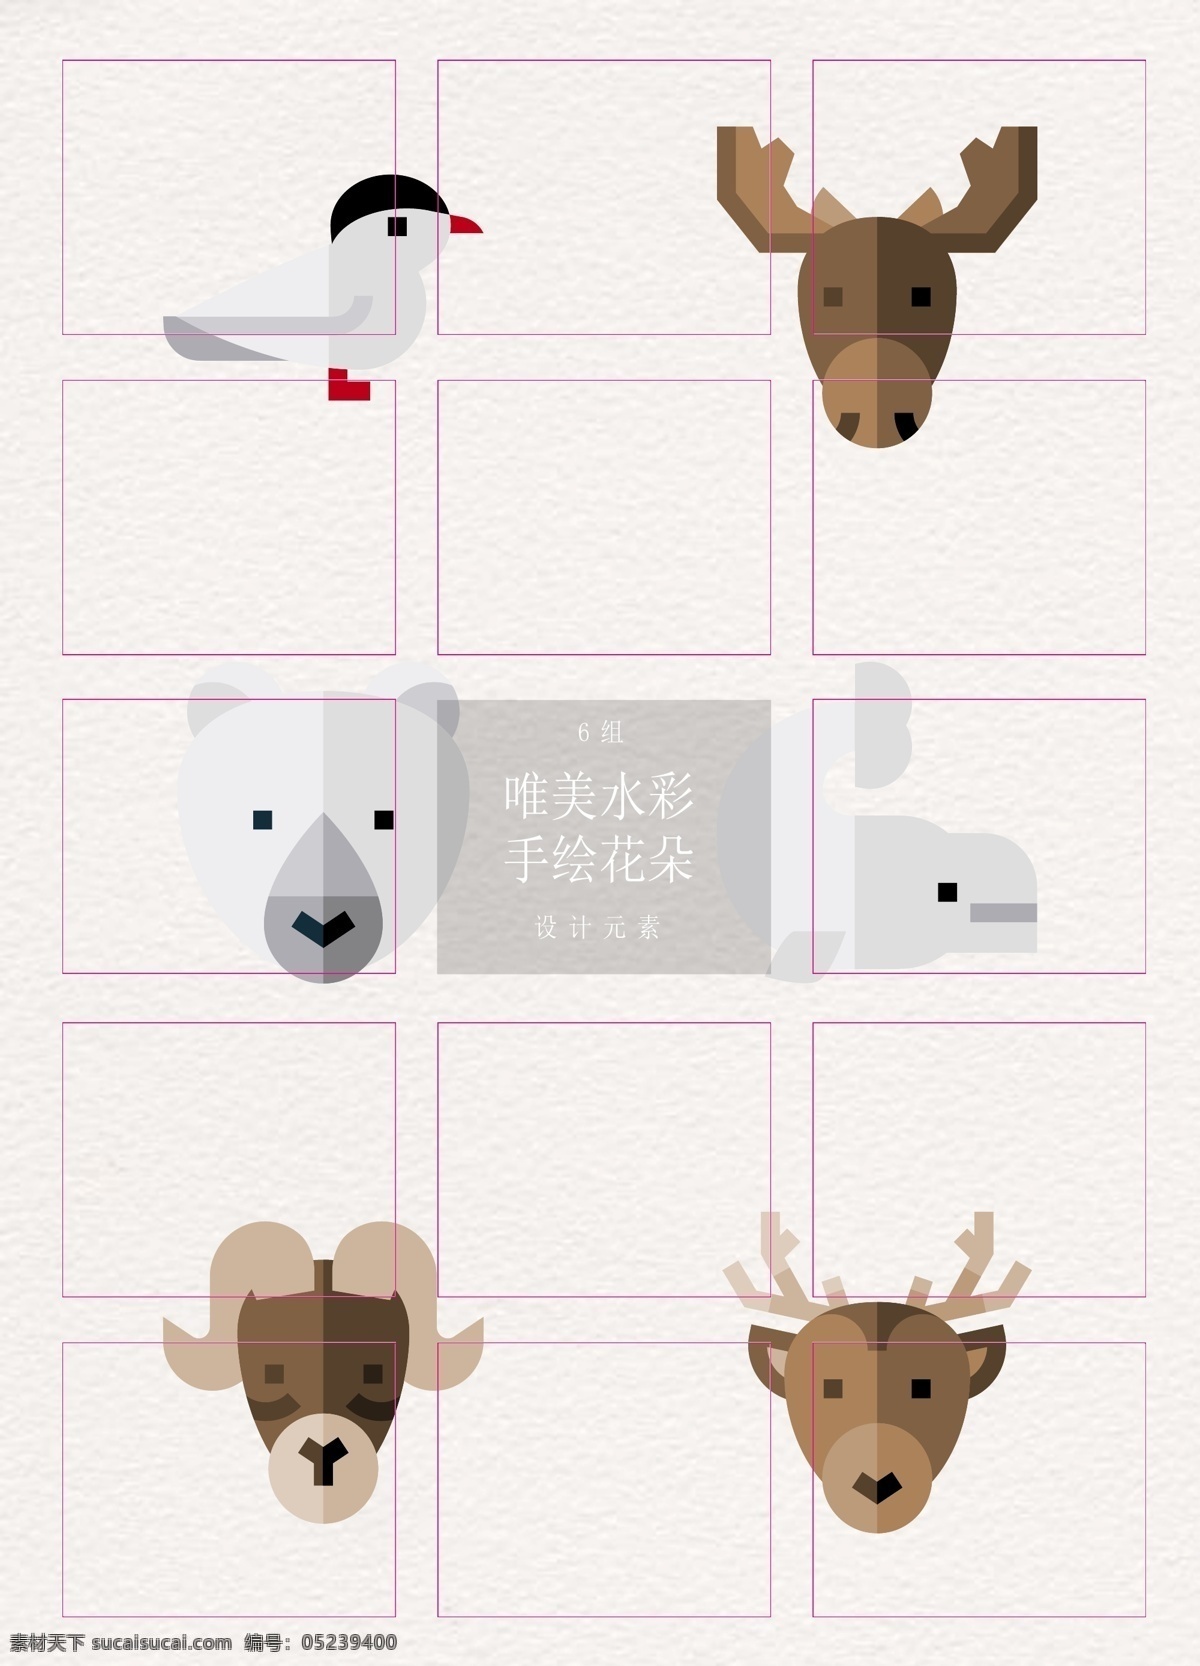 卡通 创意 冬季 动物 元素 矢量图 小鸟 北京熊 麋鹿